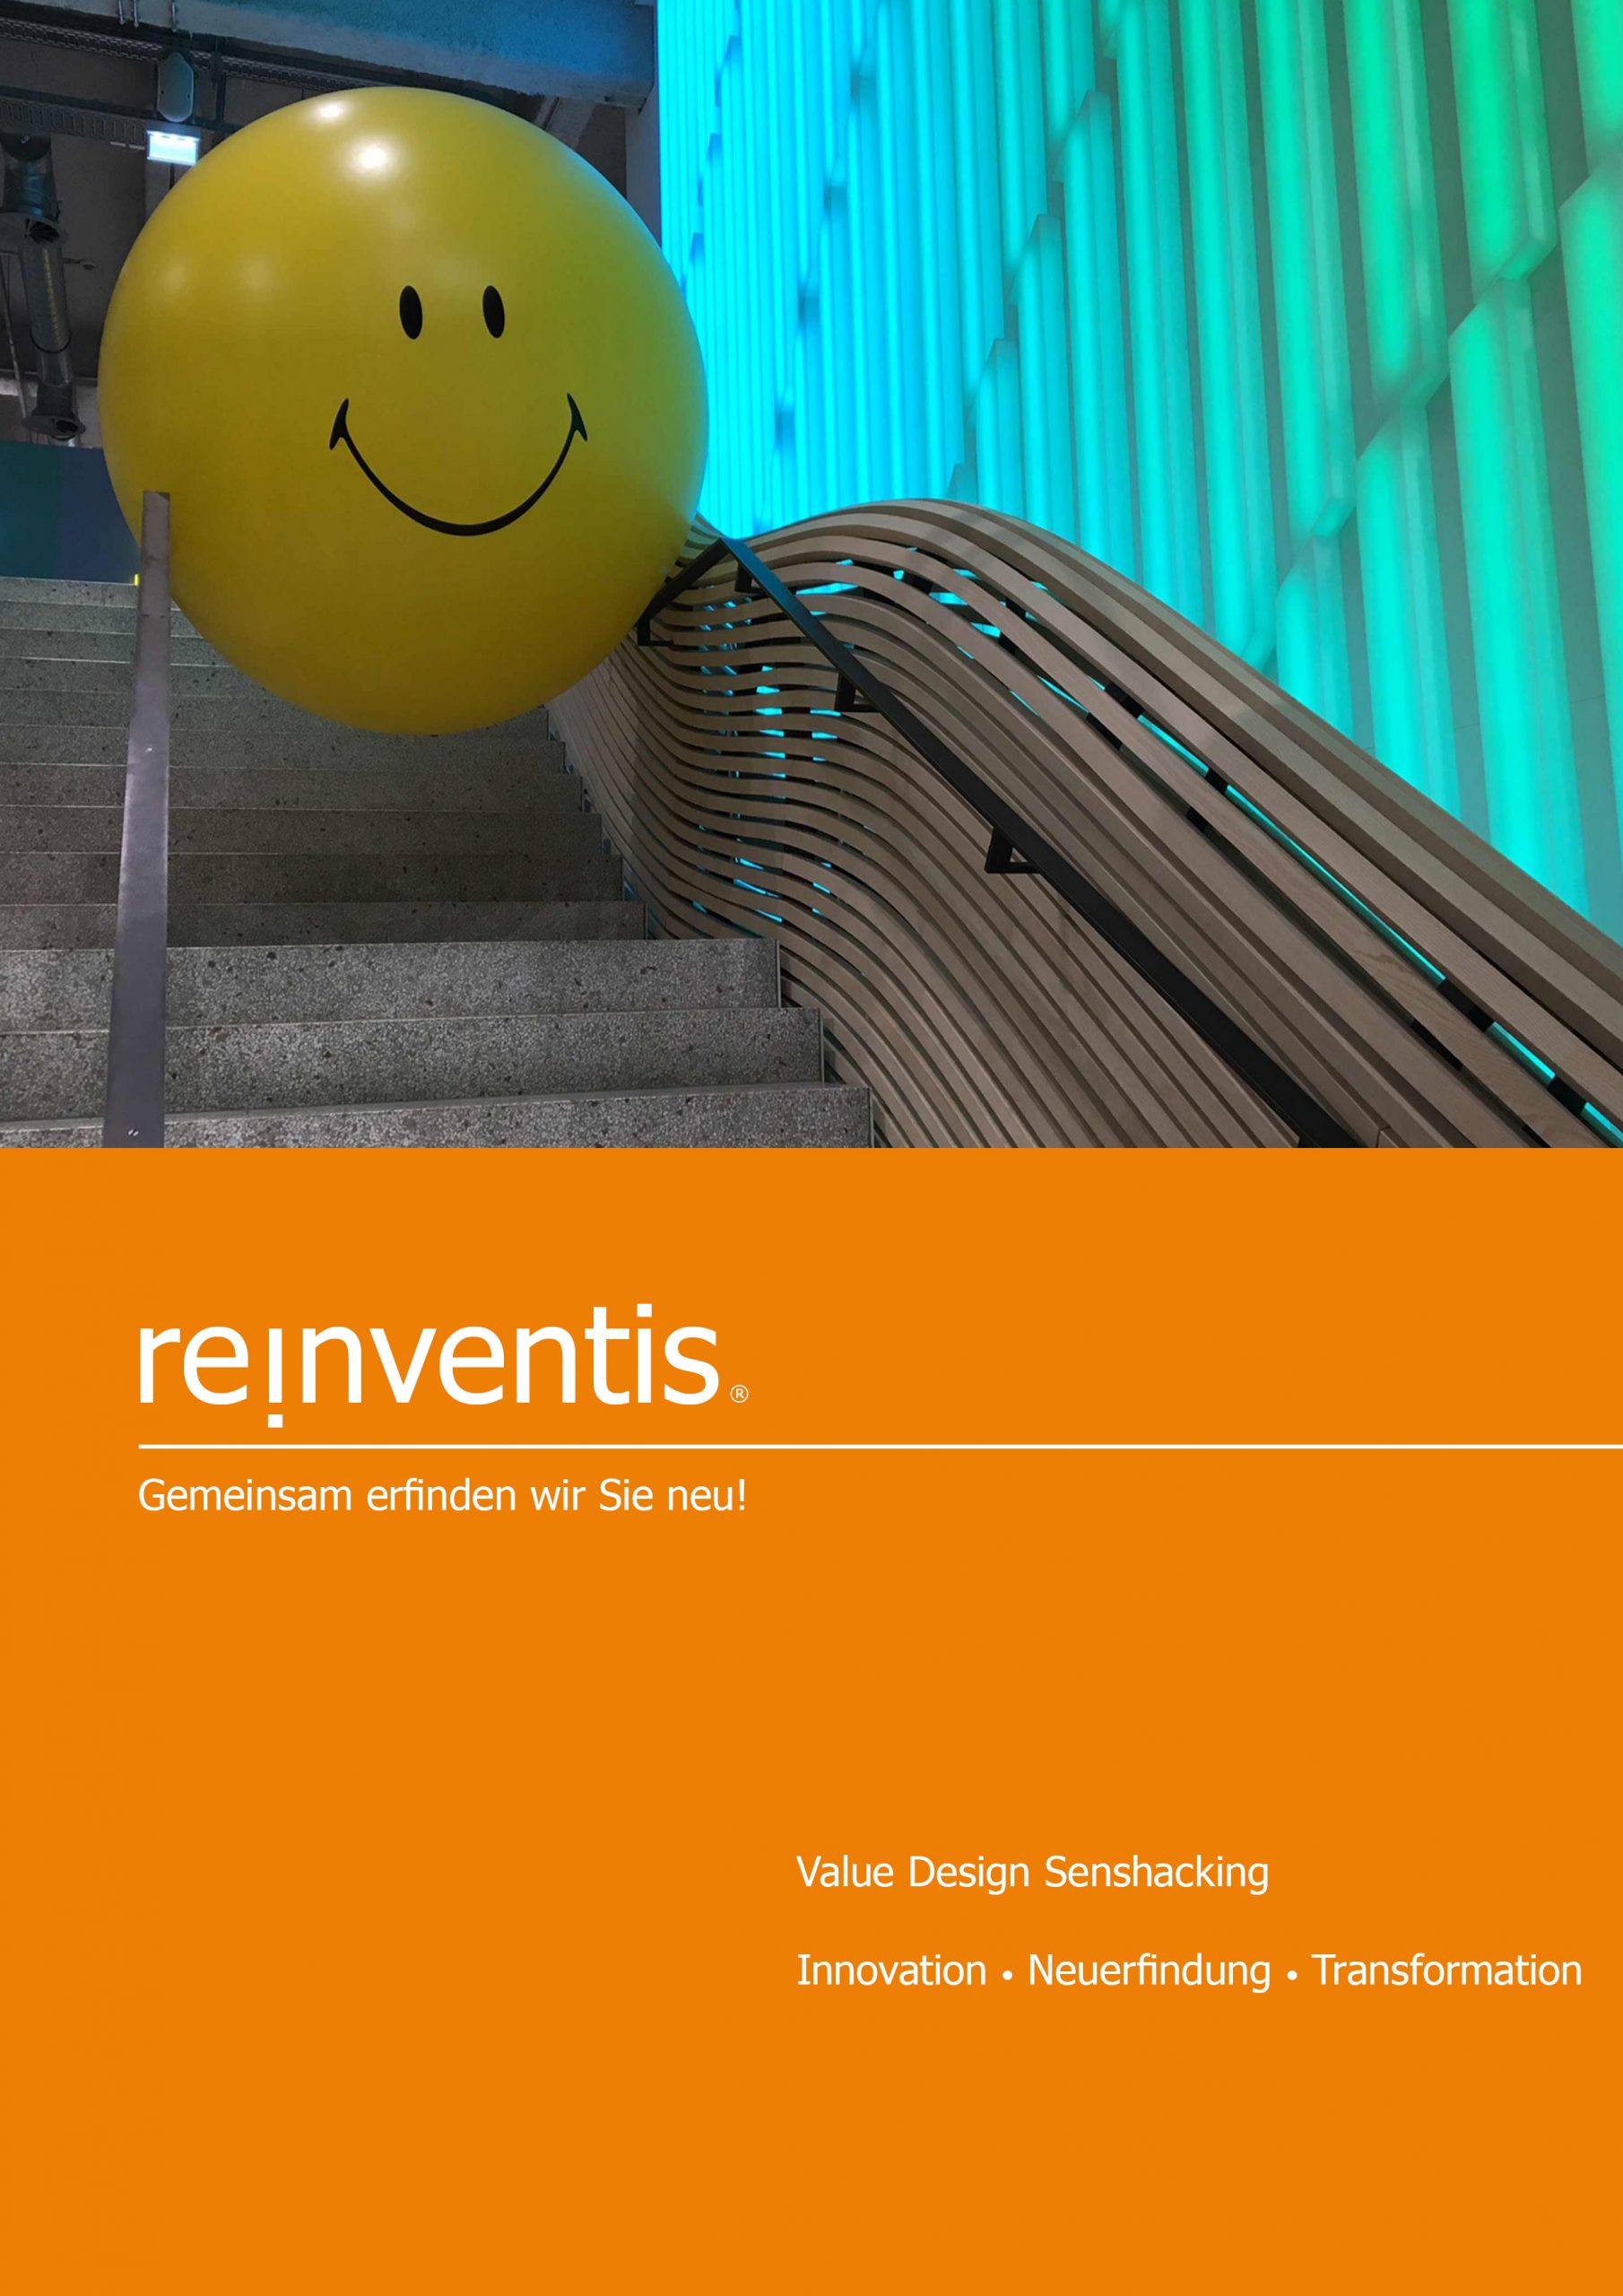 Value Design Sensehacking - Workshop - Strategieberatung REINVENTIS - Innovation - Neuerfindung - Transformation - Reinvention - München